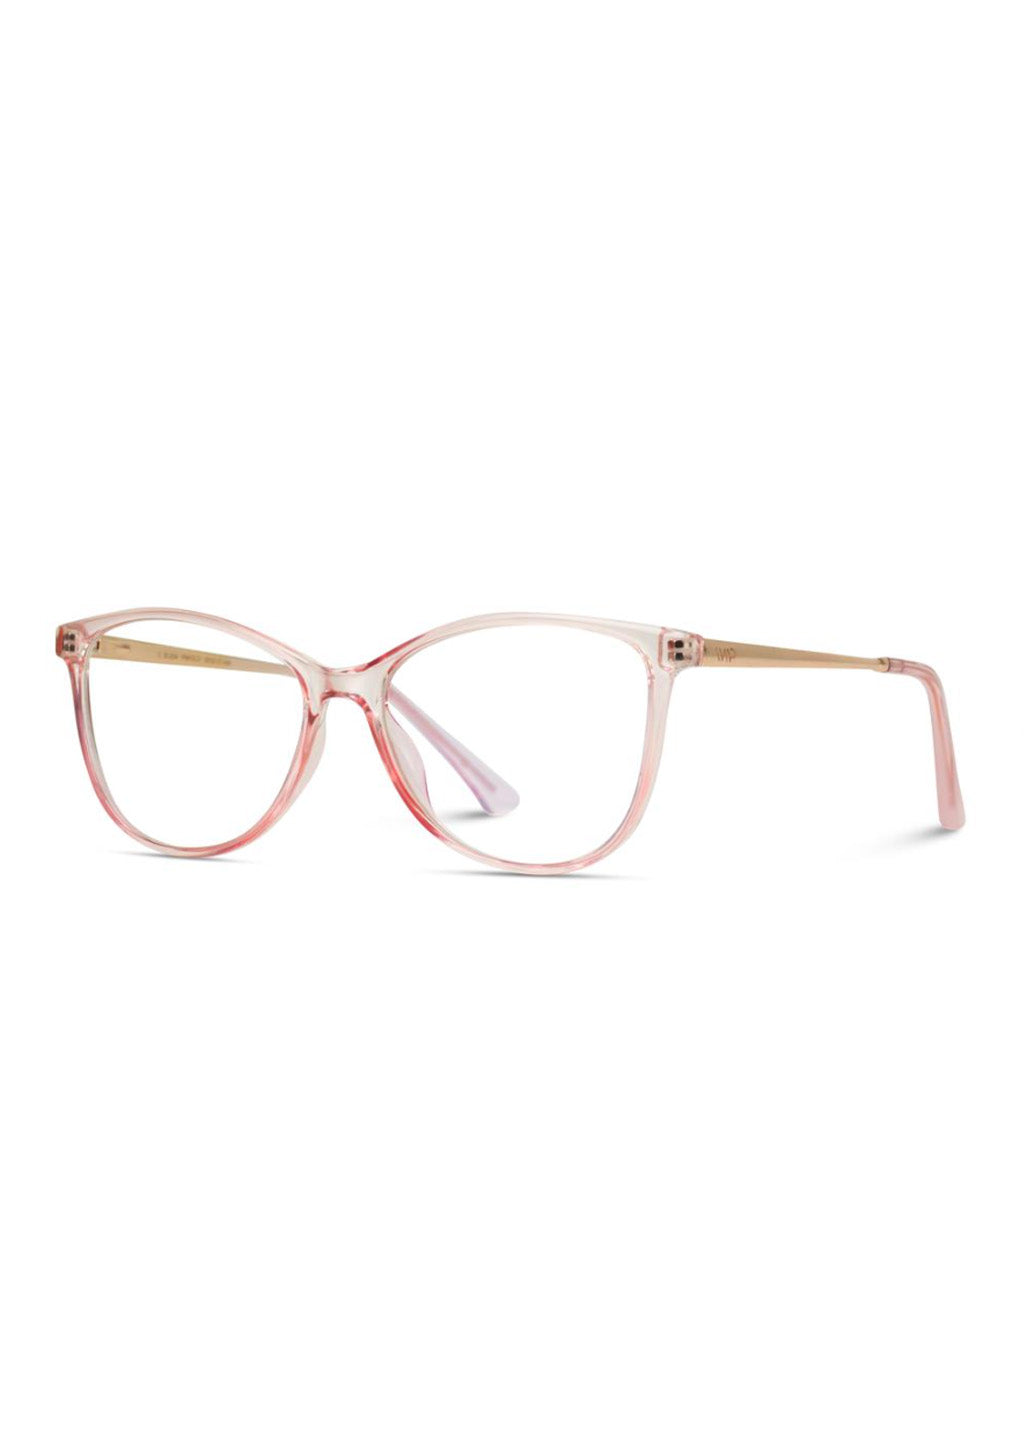 Rose Cat Eye Frame Blue Light Glasses Accessories